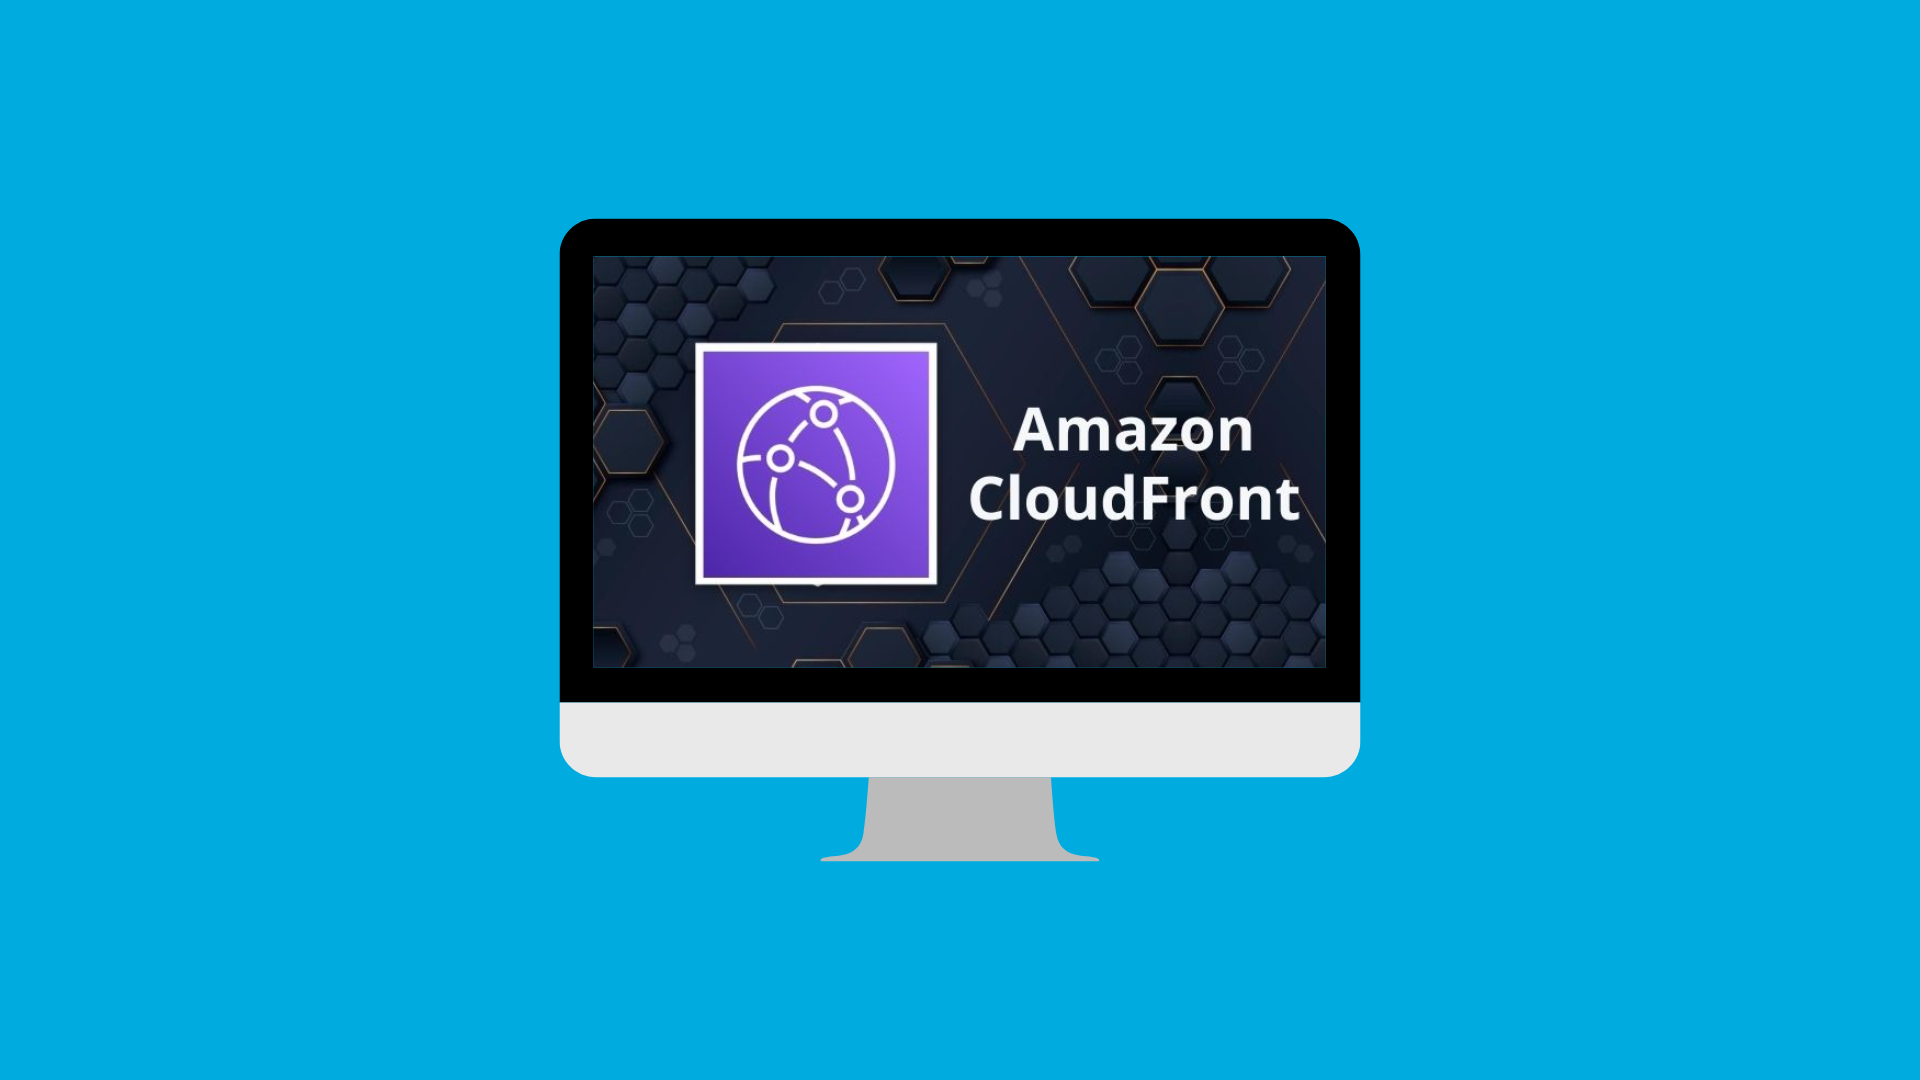 Amazon CloudFront: Entrega de Contenido en la Nube